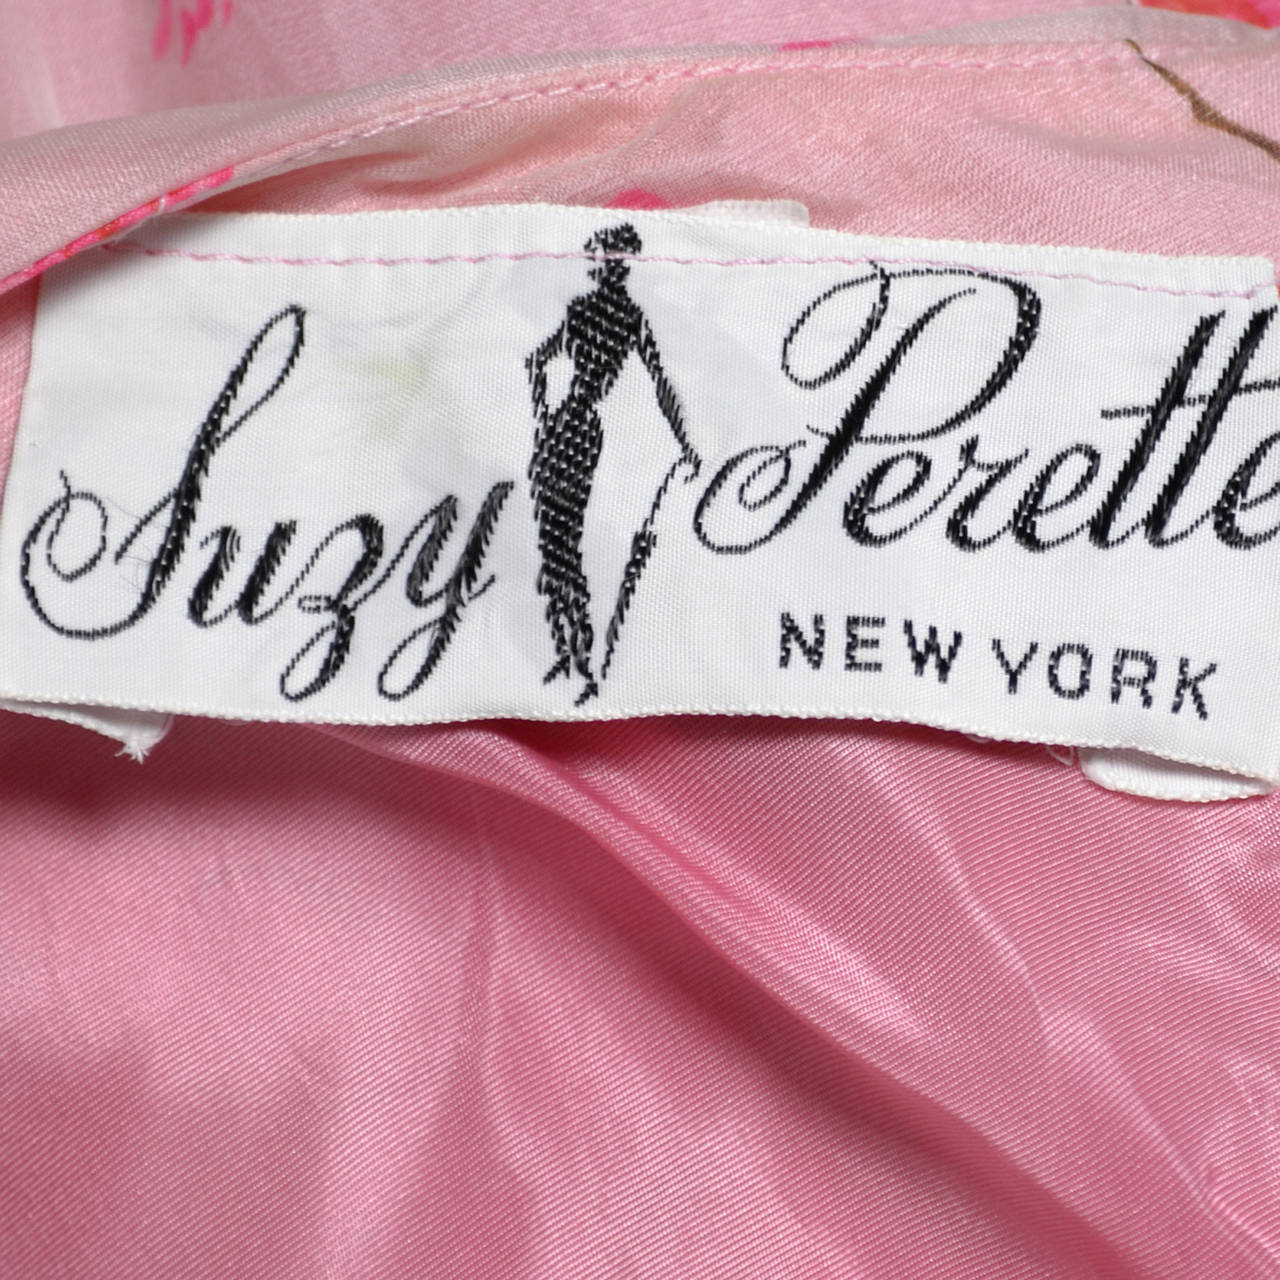 1950s Suzy Perette Vintage Dress Bubble Hem Pink Floral Organza Bow ...